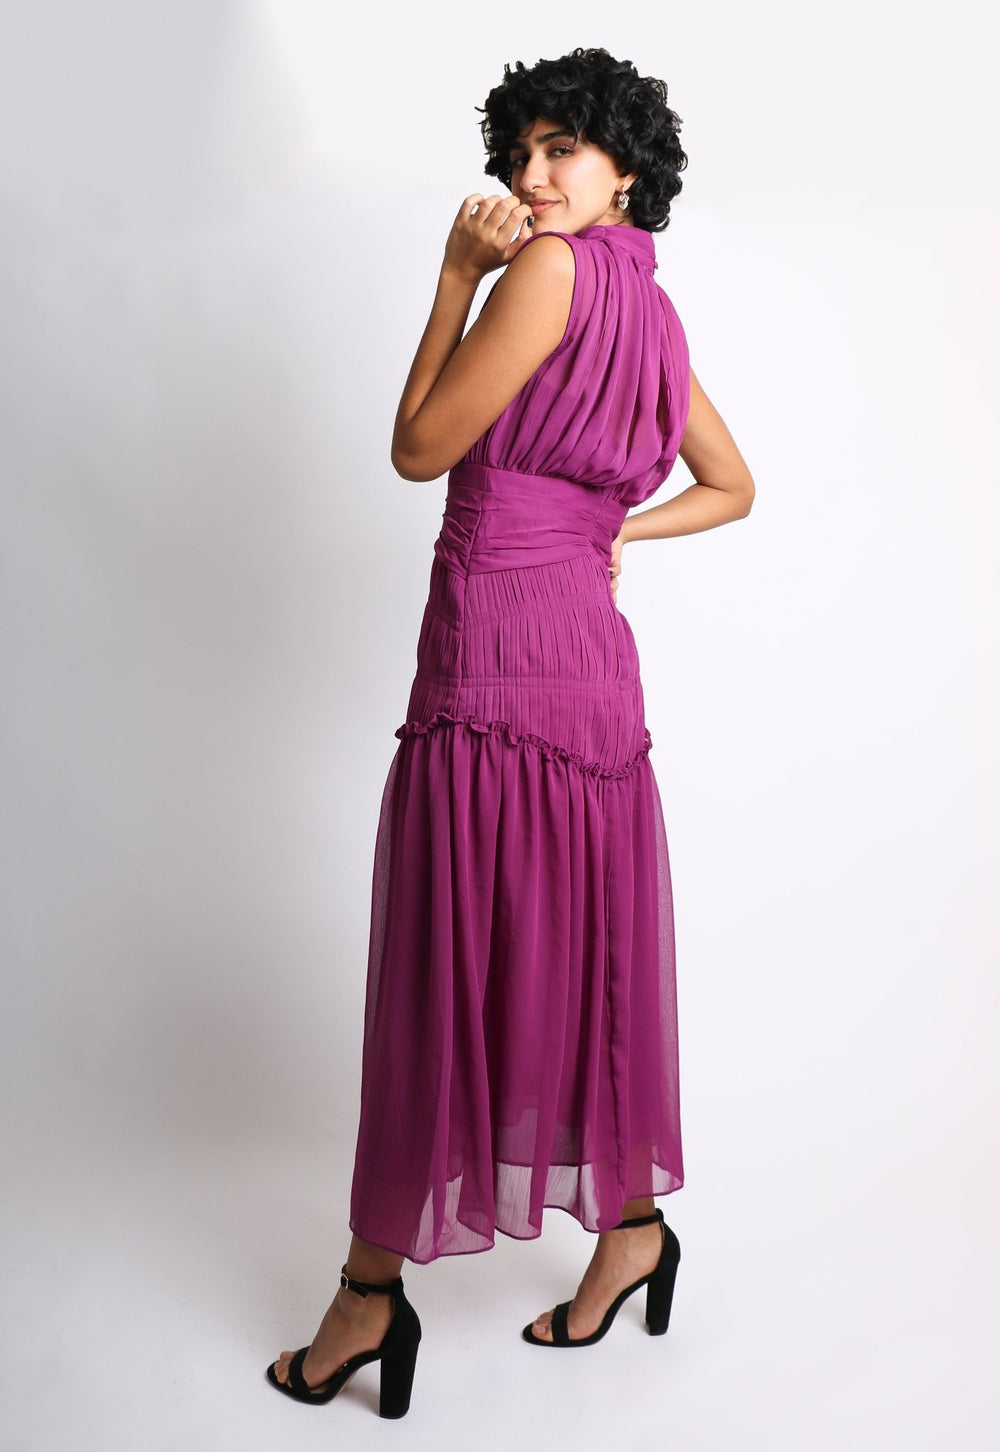 Elvira - morado - Lend the Trend renta de vestidos mexico